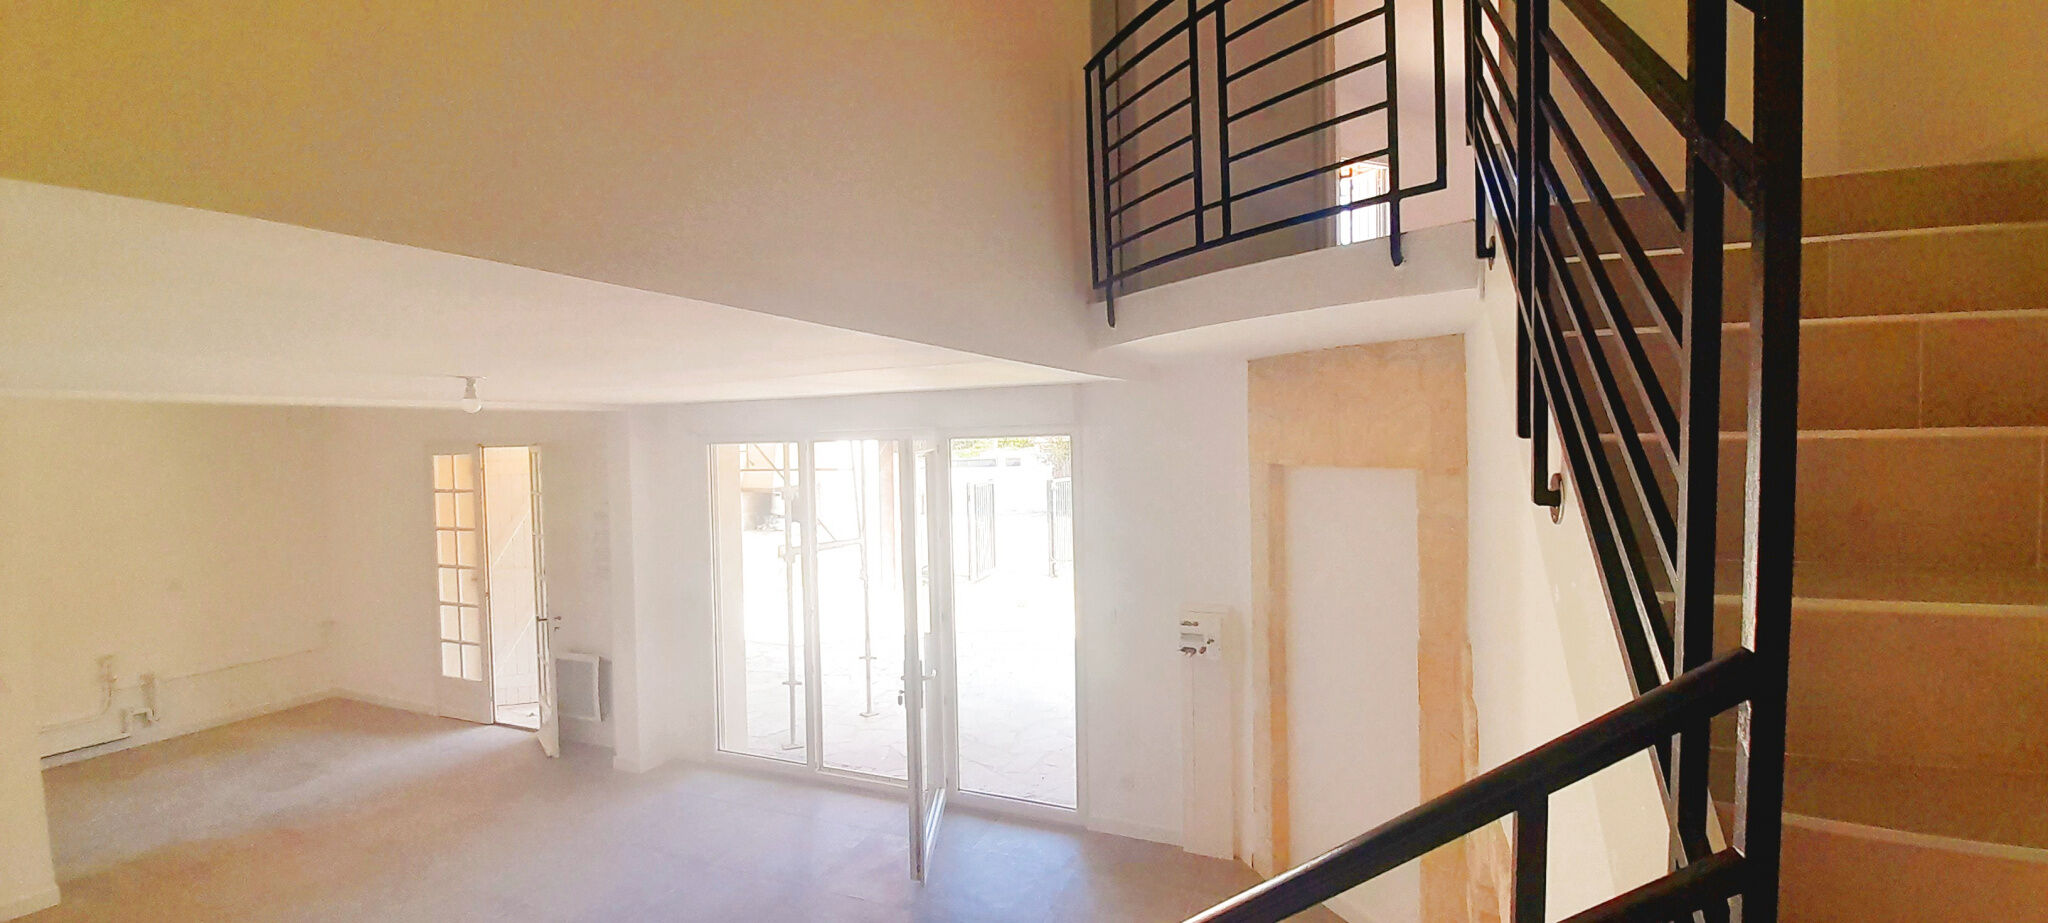 Vente Duplex 106 m² à Valergues 280 000 €